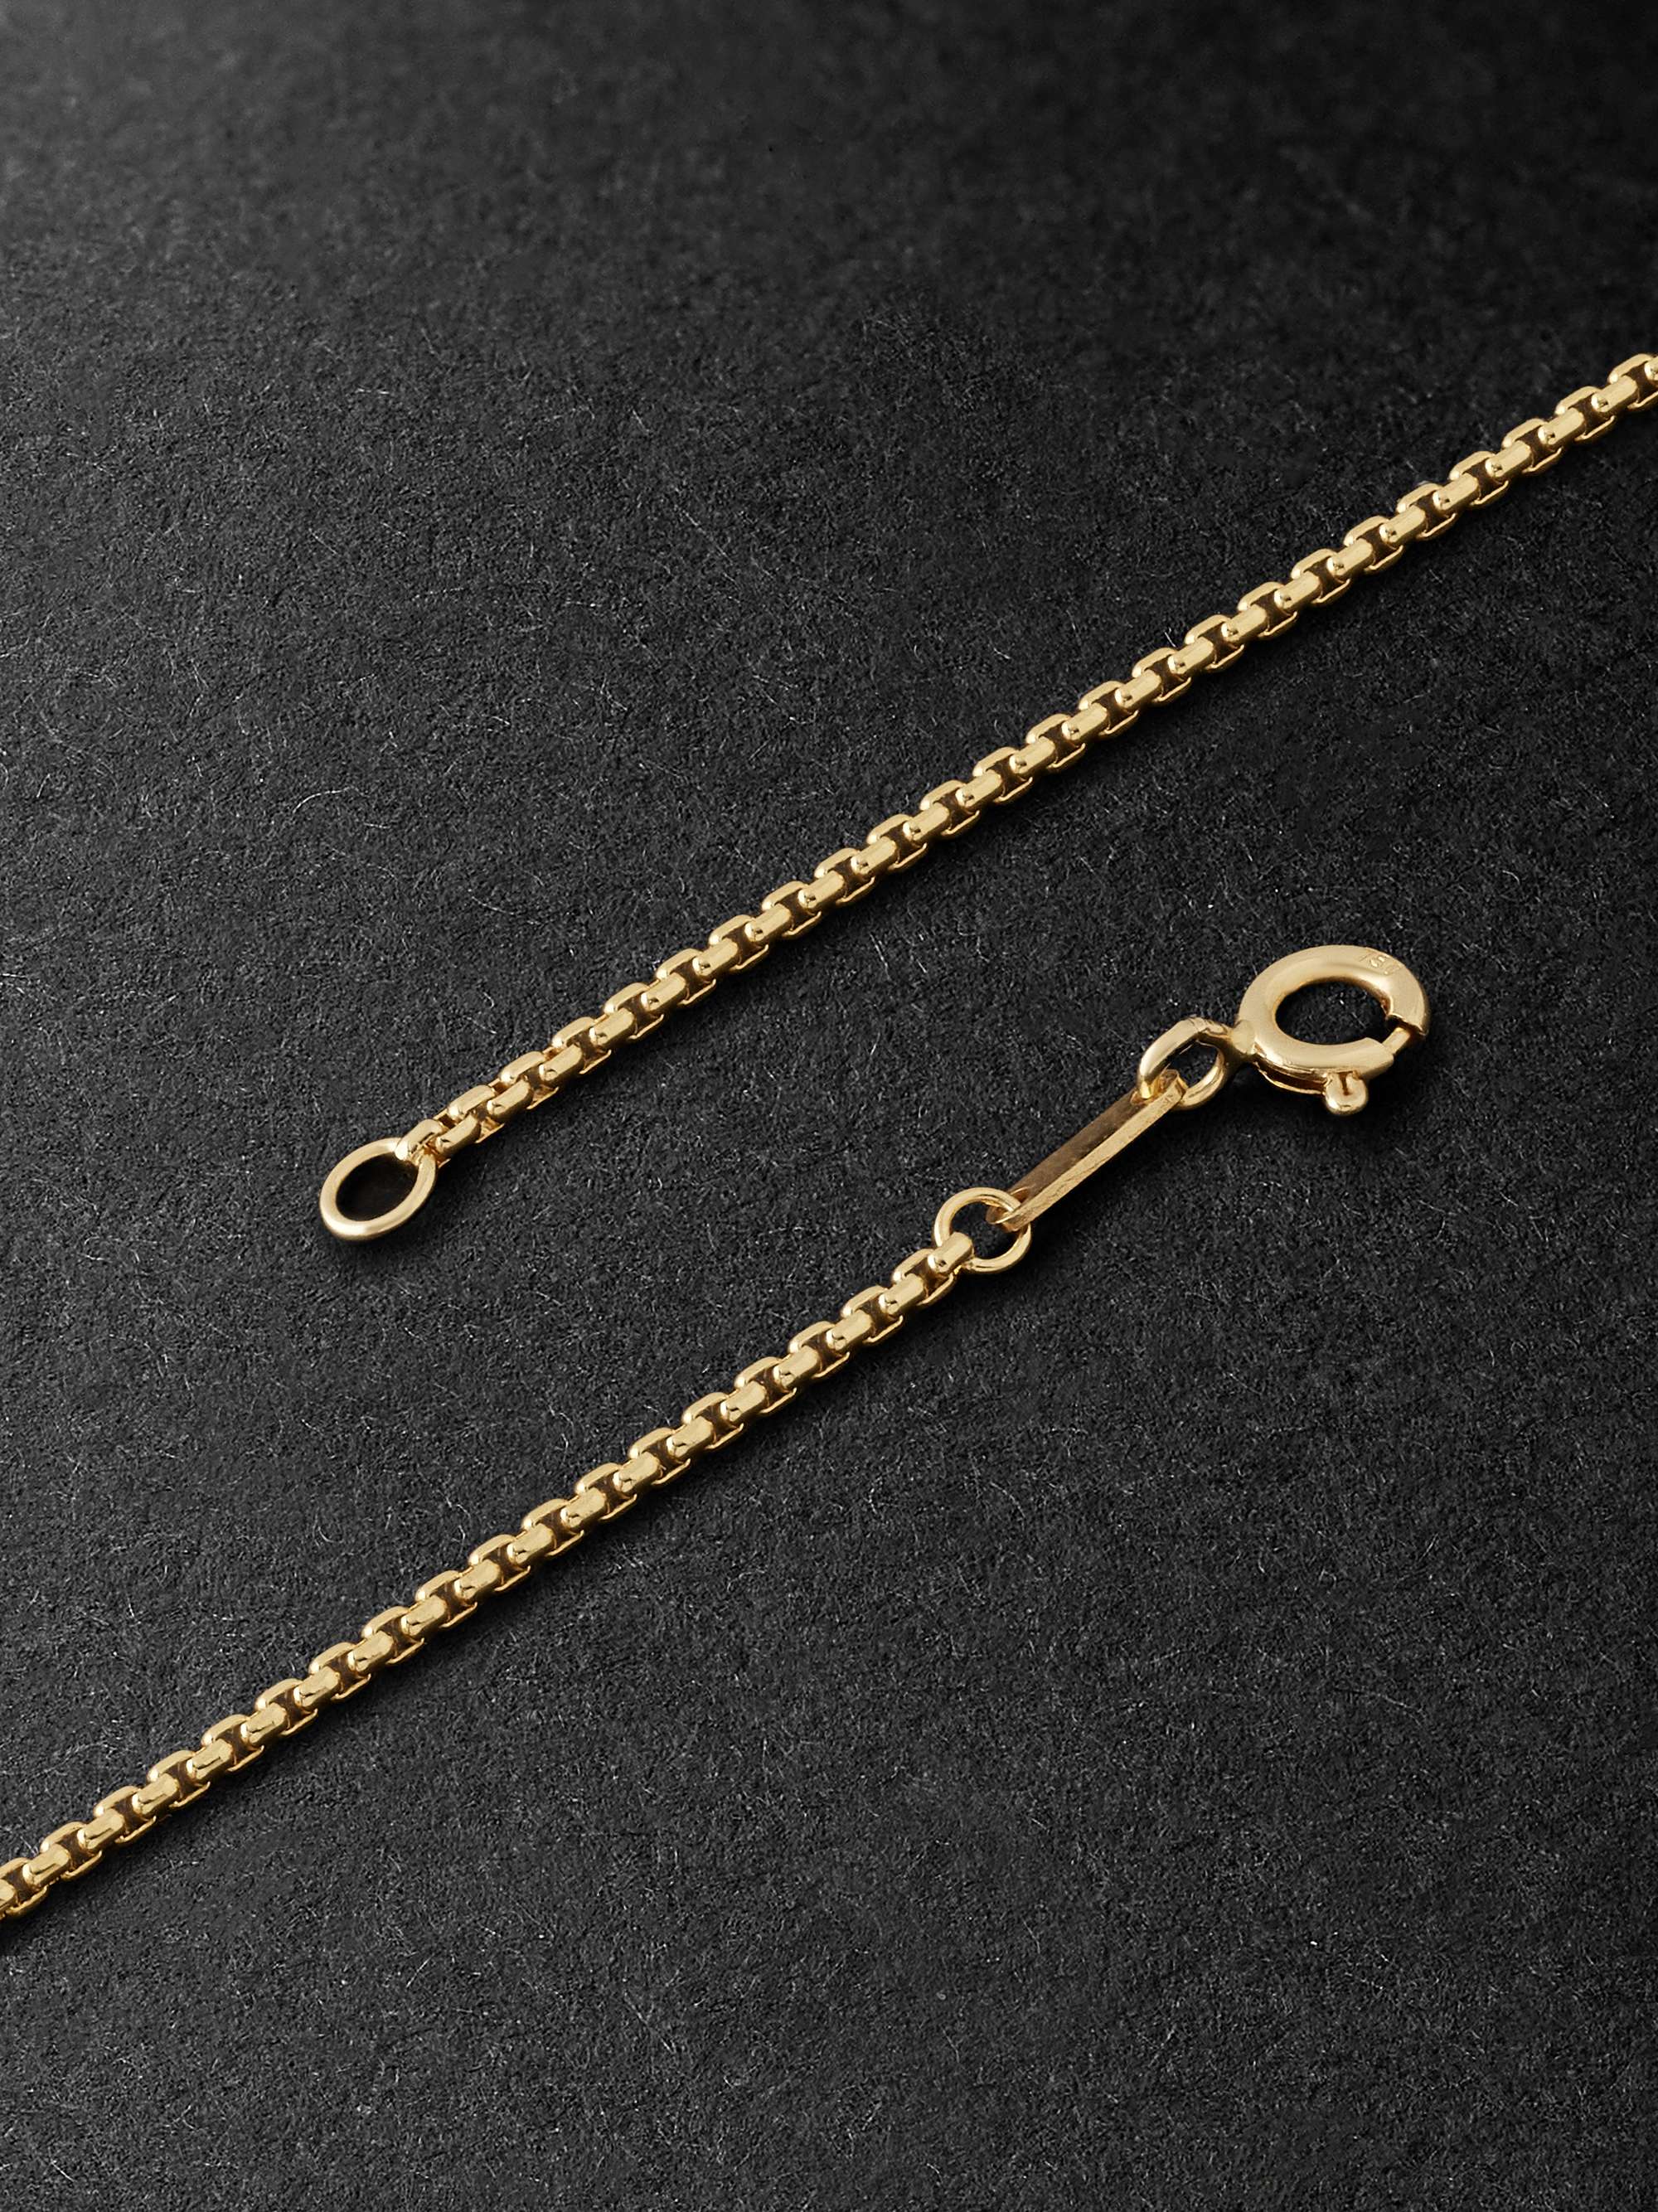 FERNANDO JORGE 18-Karat Gold Chain Necklace